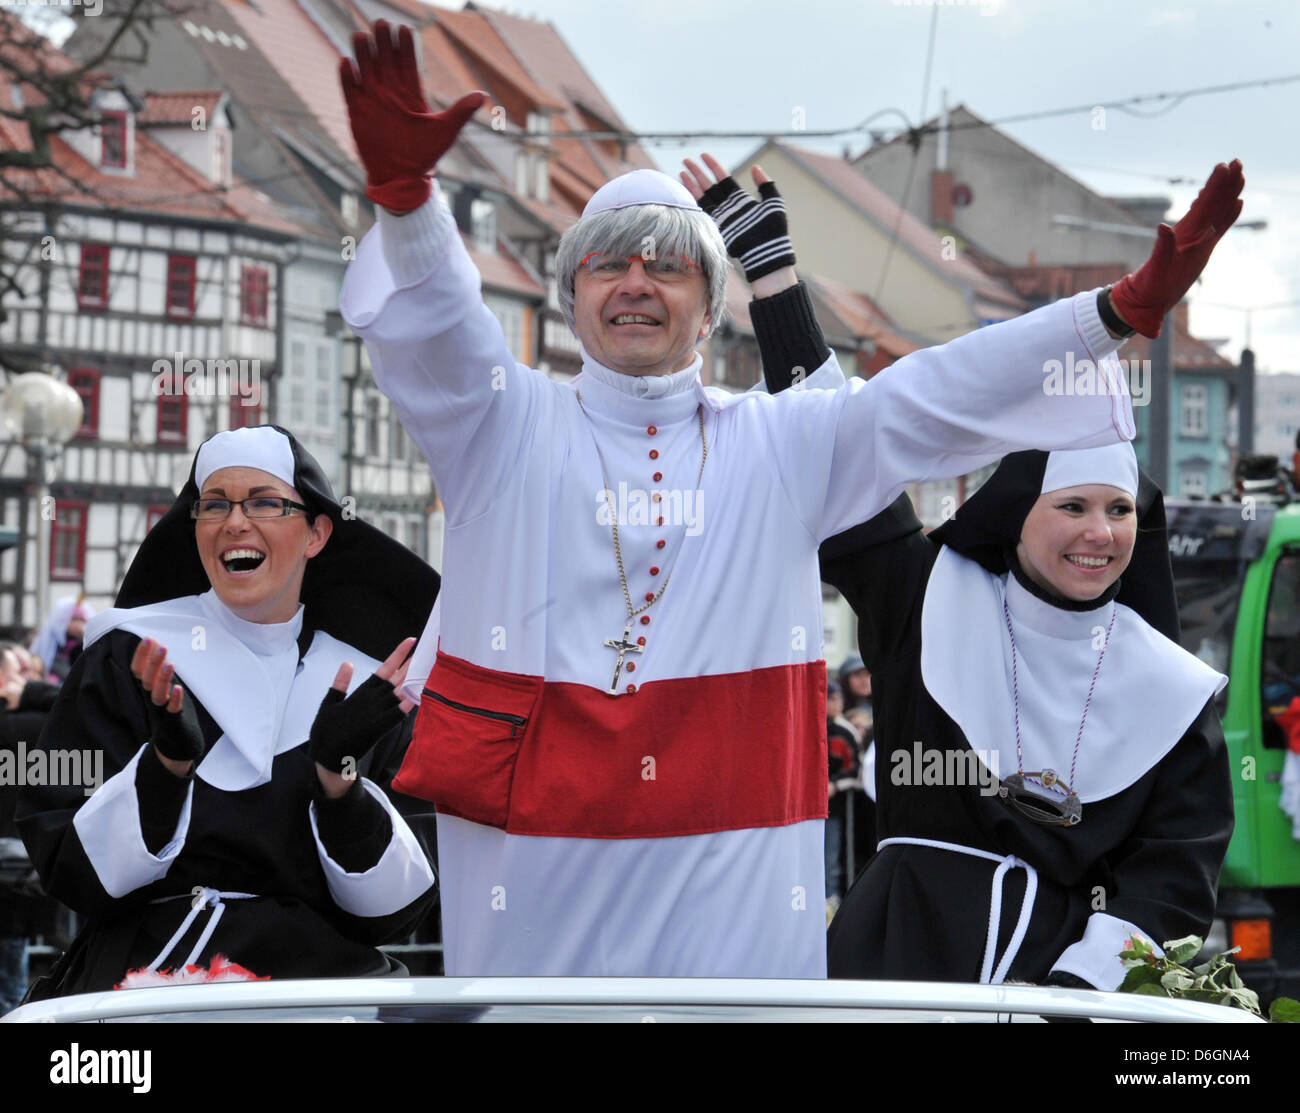 Carnivalists celebrare durante il Land Turingia la più grande sfilata di carnevale a Erfurt, Germania, 19 febbraio 2012. Foto: MARTIN SCHUTT Foto Stock